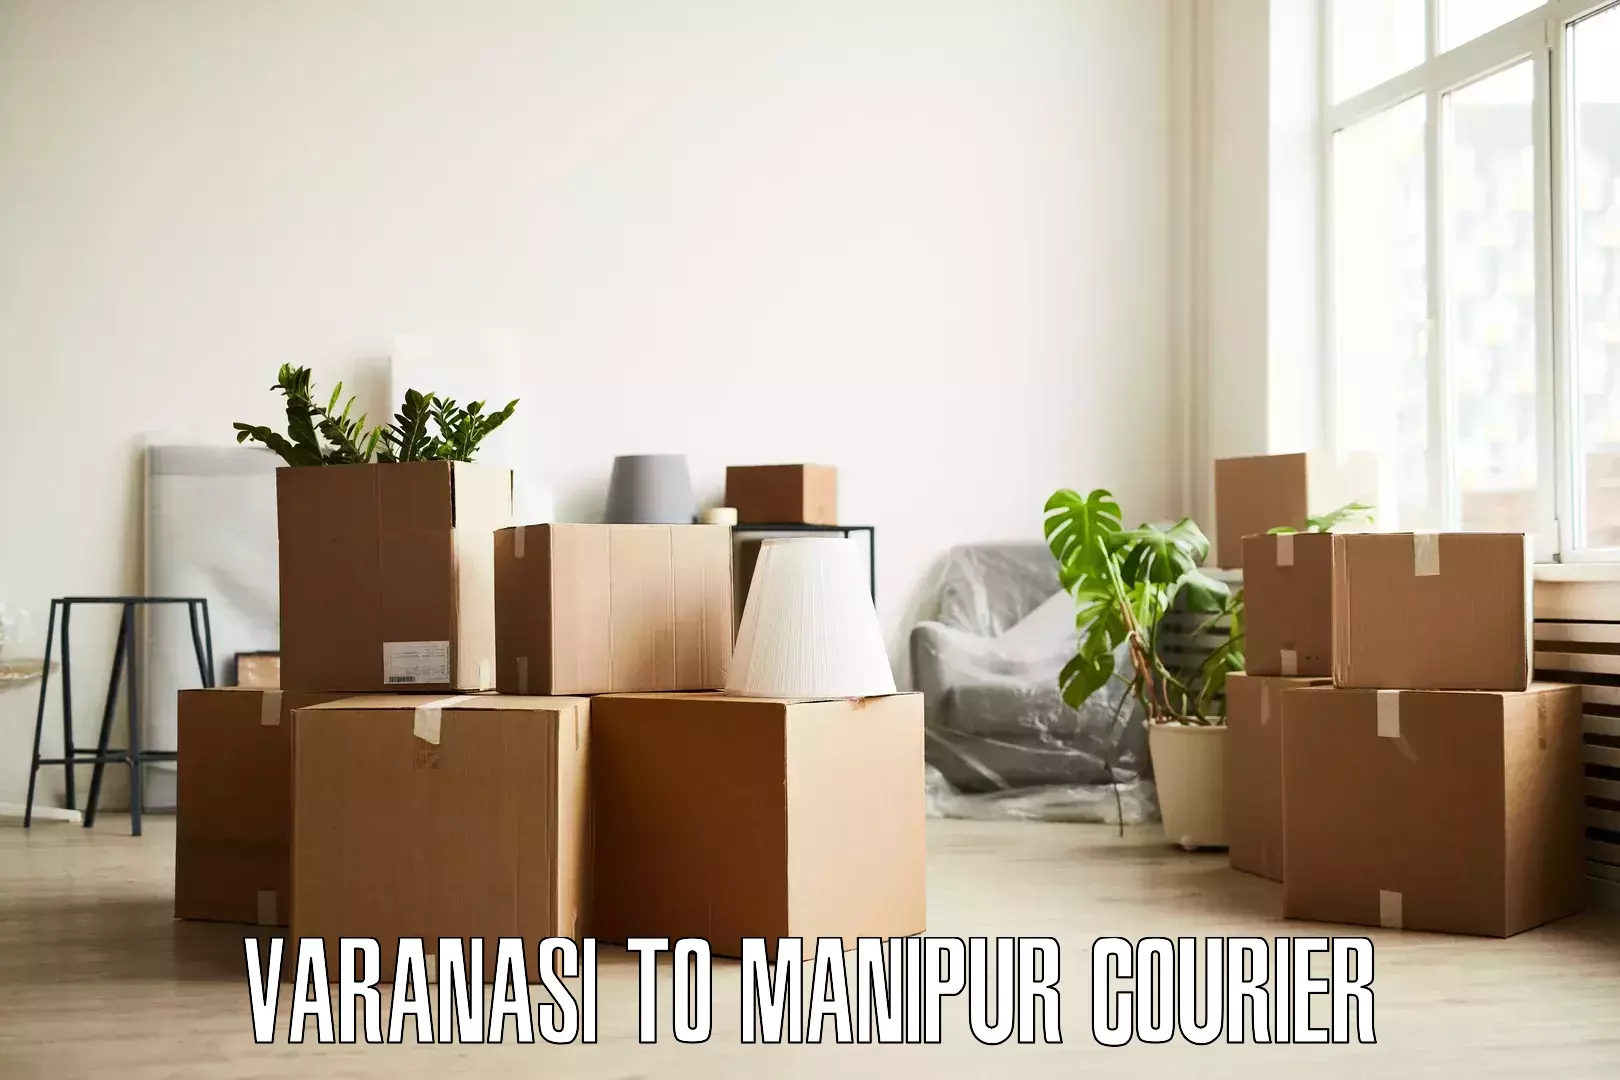 Skilled furniture movers Varanasi to Moirang